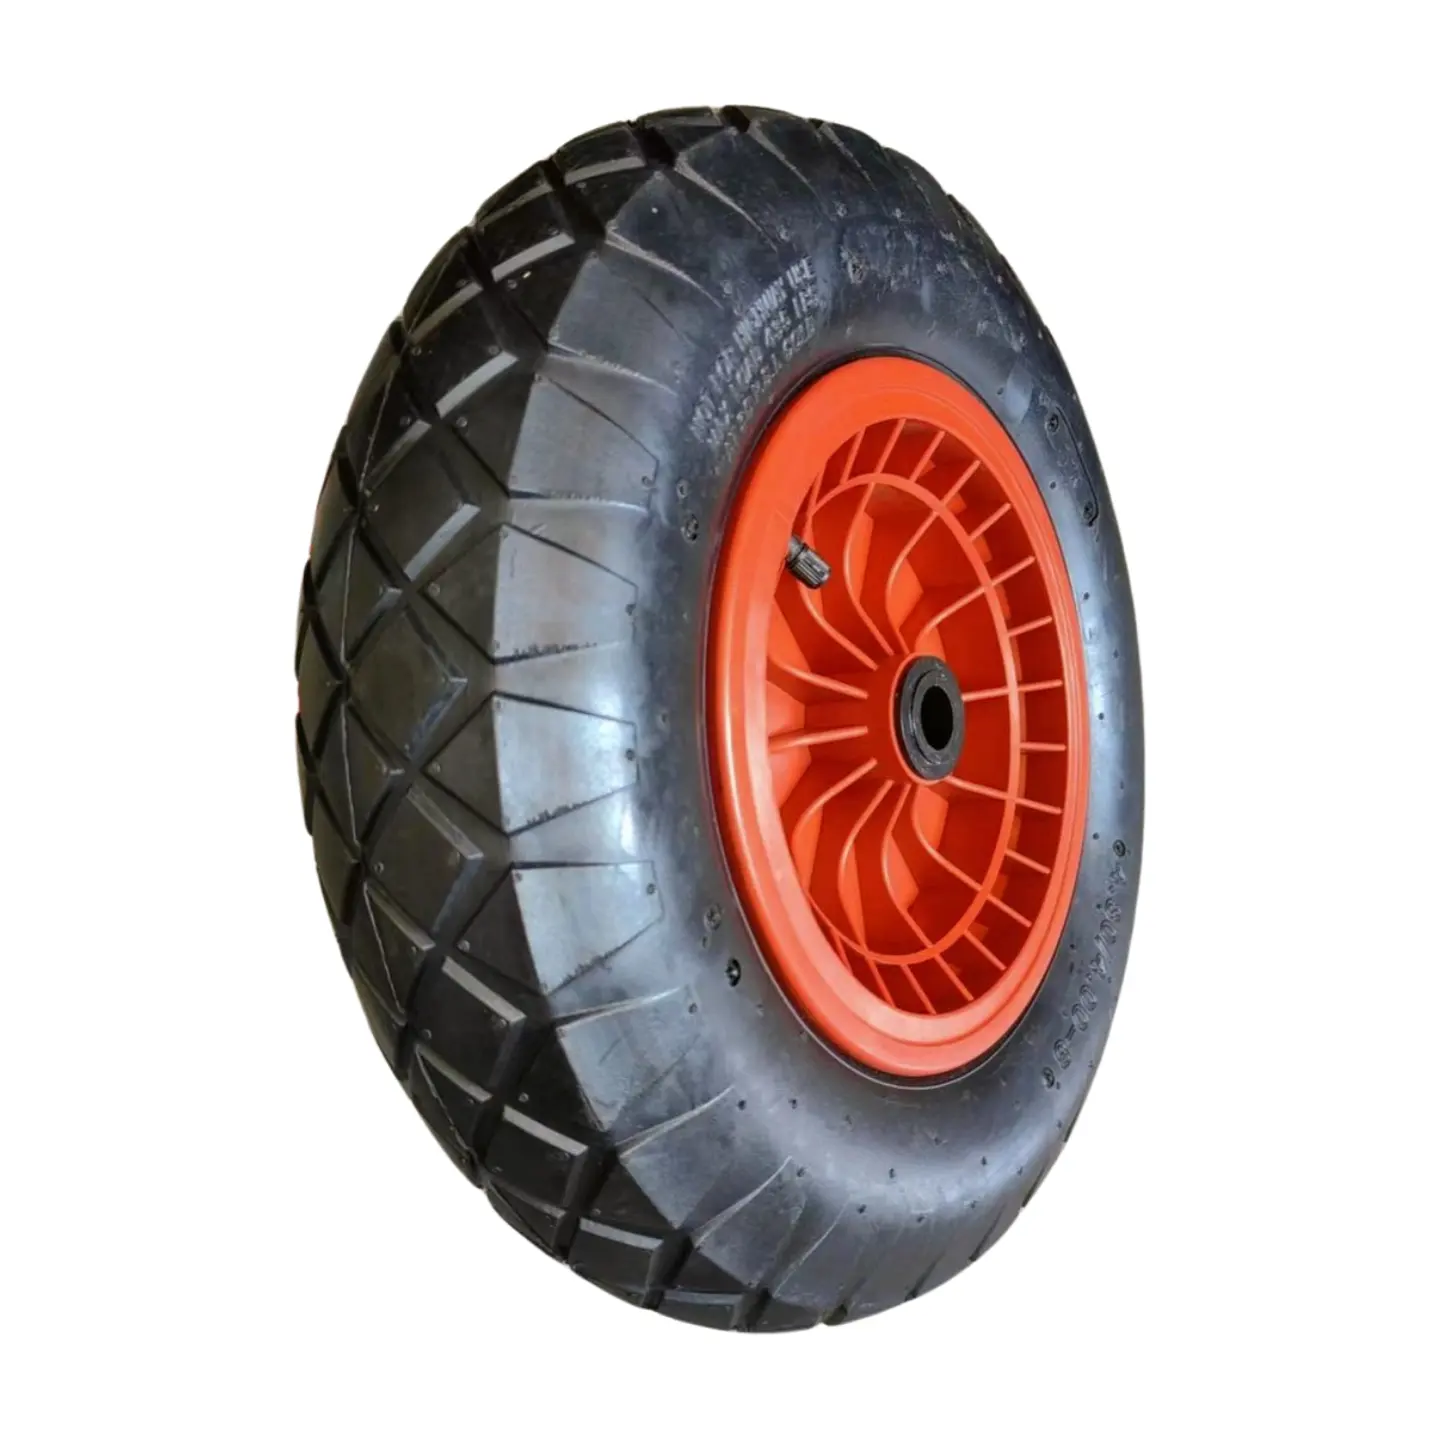 13" x 5,00-6 13*x3,00 Trolley-Rad pneumatische Reifen aufblasbares Gummirad demontierter Rad für einen Gartenschubkarren